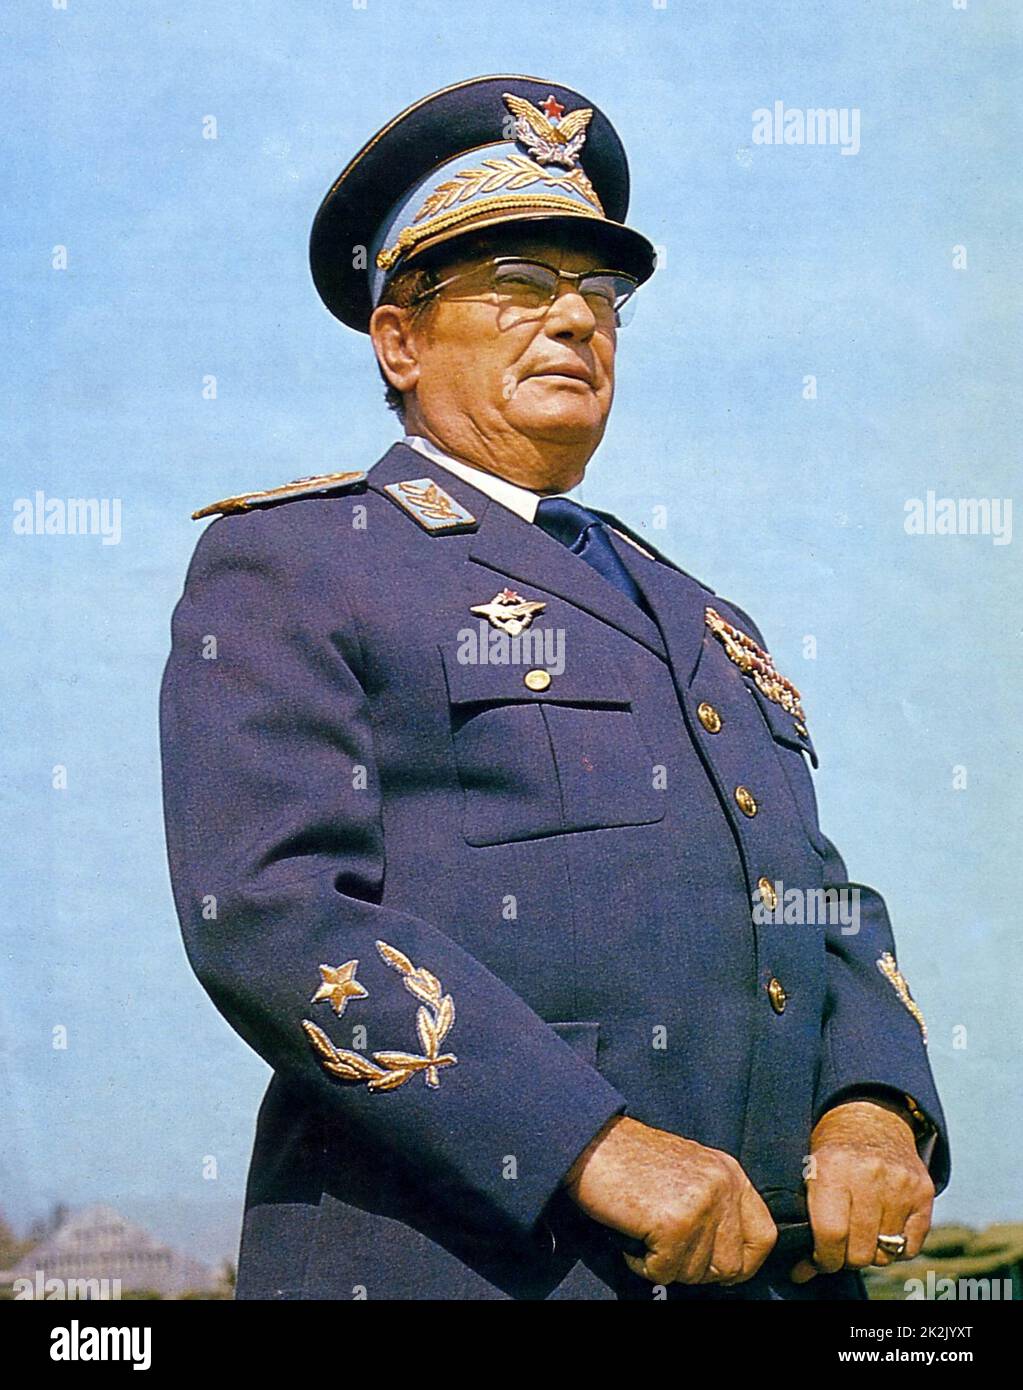 Josip Broz Tito (1892 - 1980), révolutionnaire et homme d'État yougoslave. Secrétaire général (plus tard président) du parti communiste de Yougoslavie (1939-80), LA DEUXIÈME GUERRE MONDIALE a conduit le mouvement de la résistance yougoslave, le partisans yougoslave (1941-45). Premier ministre (1945-53), puis président (1953-80) de la Yougoslavie de 1943 à sa mort en 1980 Banque D'Images